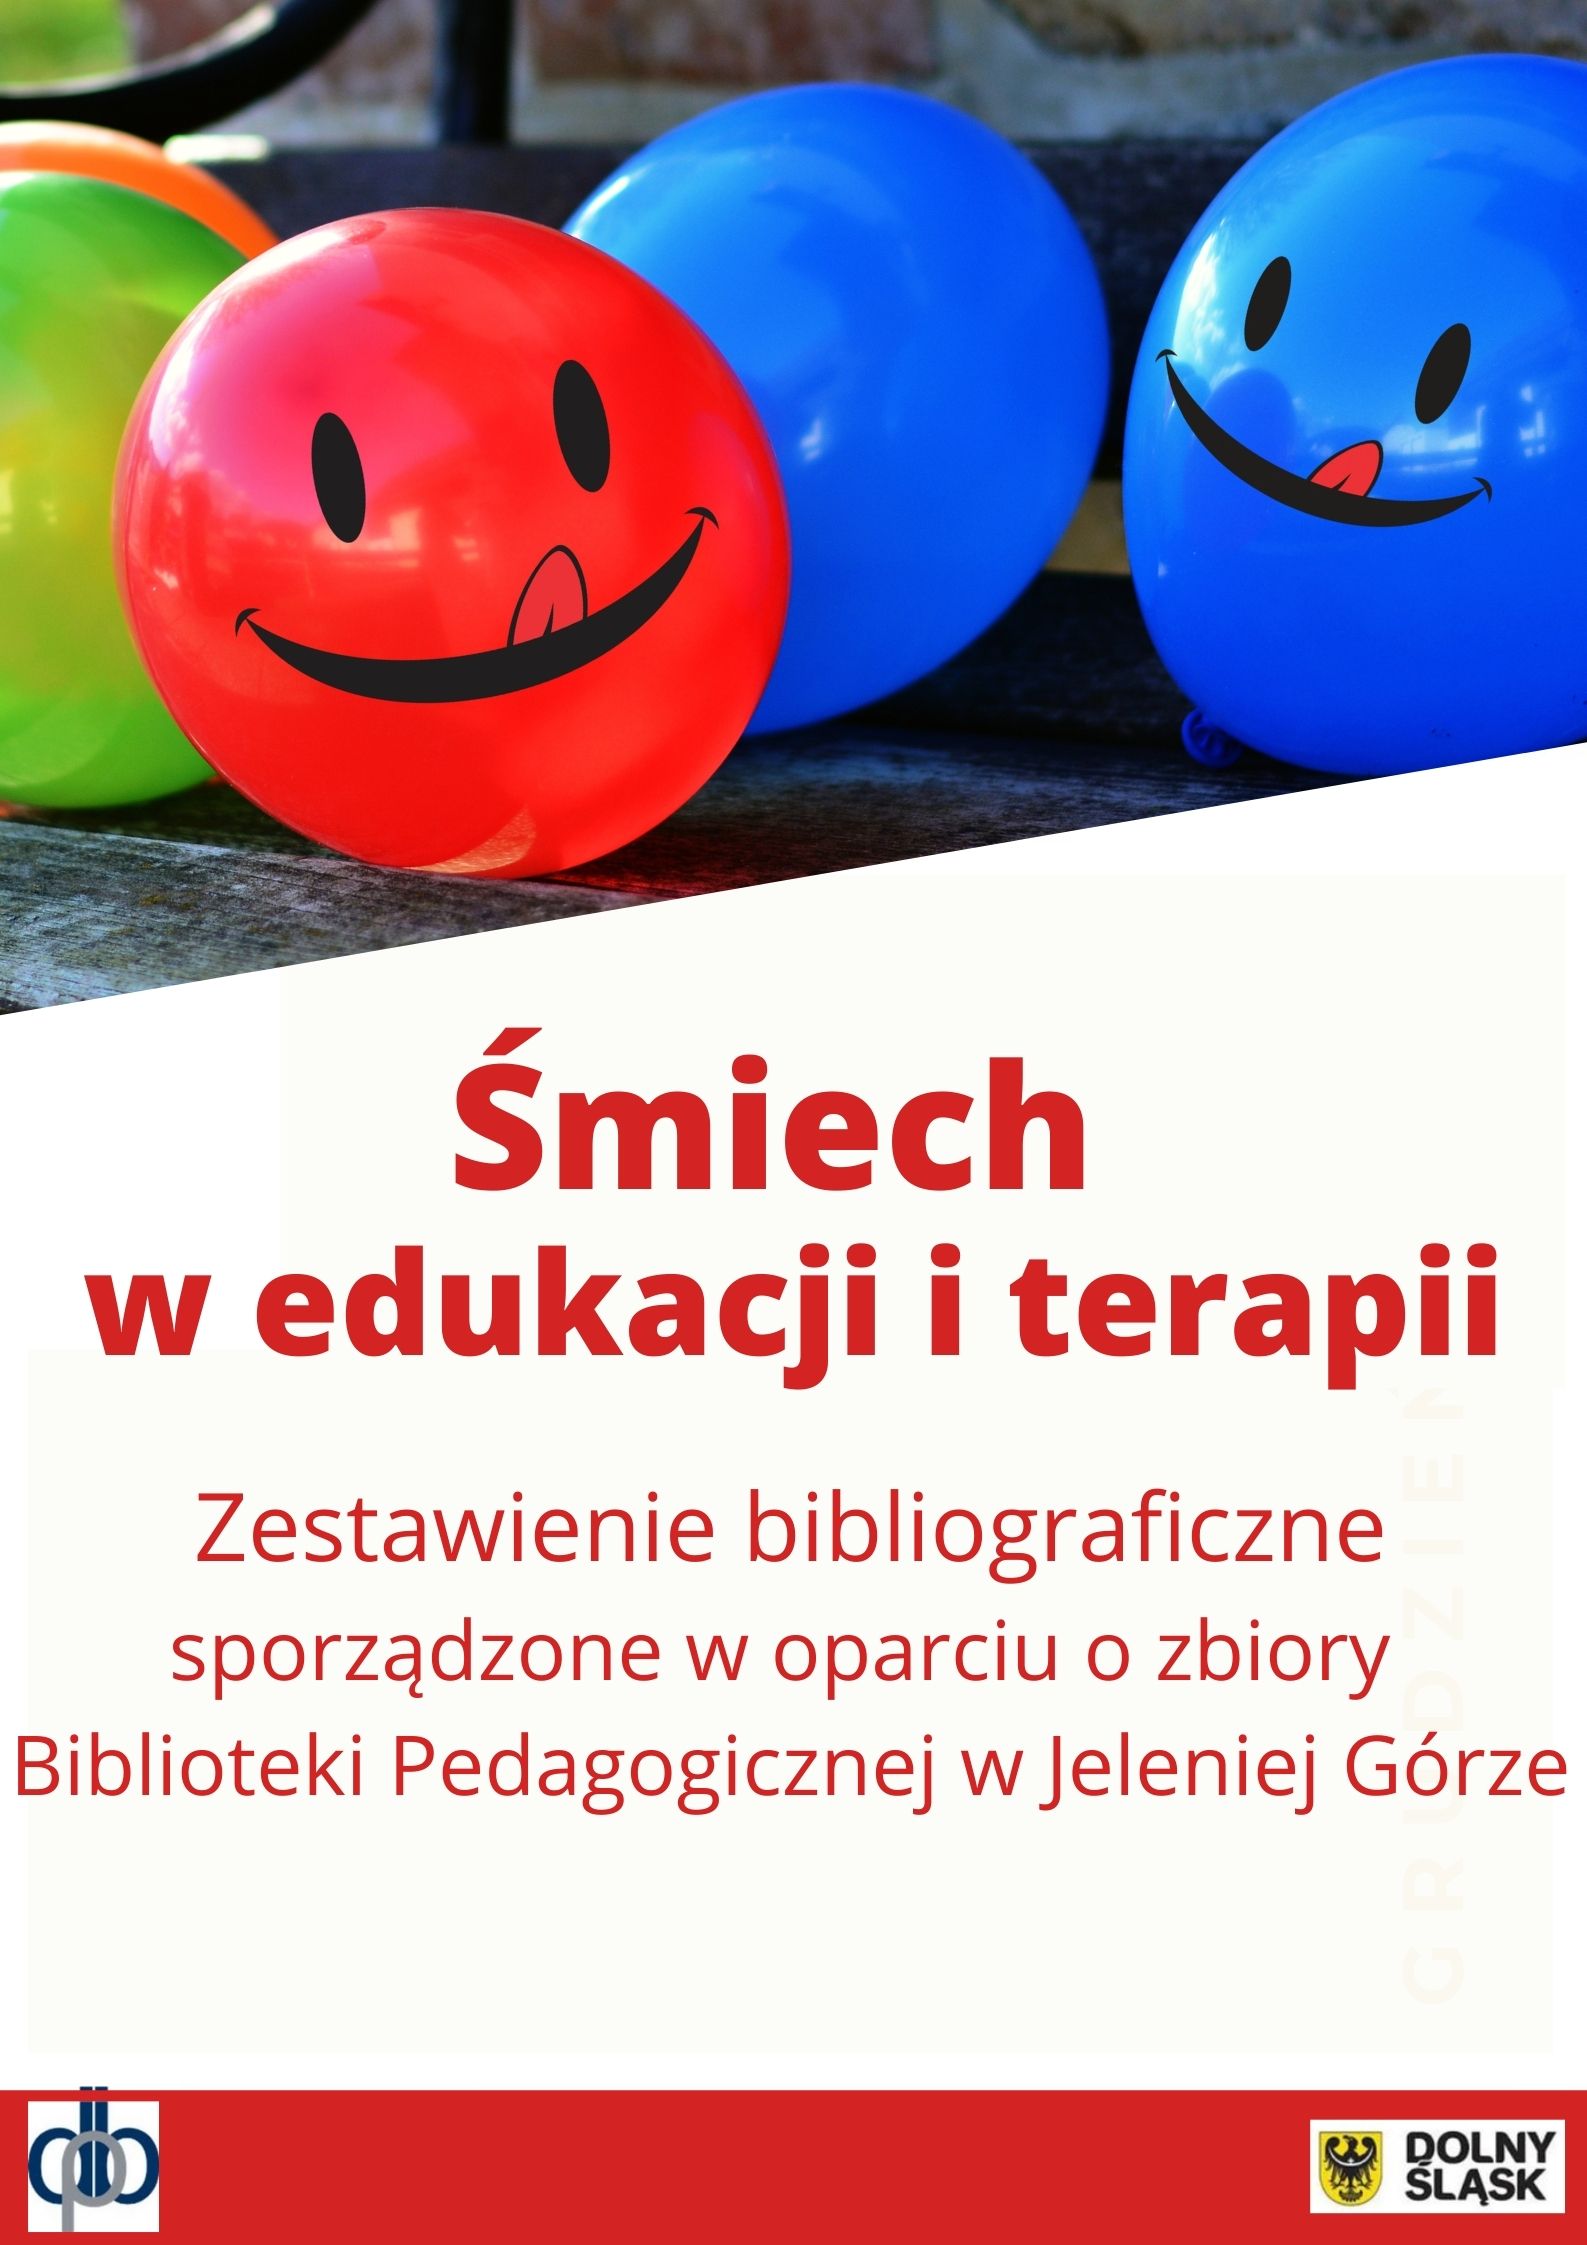 Plakat prostokątny w pionie: u góry ilustracja z różnokolorowymi "uśmiechniętymi" balonami; poniżej napis: Śmiech w edukacji i terapii. Zestawienie bibliograficzne publikacji sporządzone w oparciu o zbiory Dolnośląskiej Biblioteki Pedagogicznej w Jeleniej Górze; na dole na czerwonym pasku logo DBP i UMWD